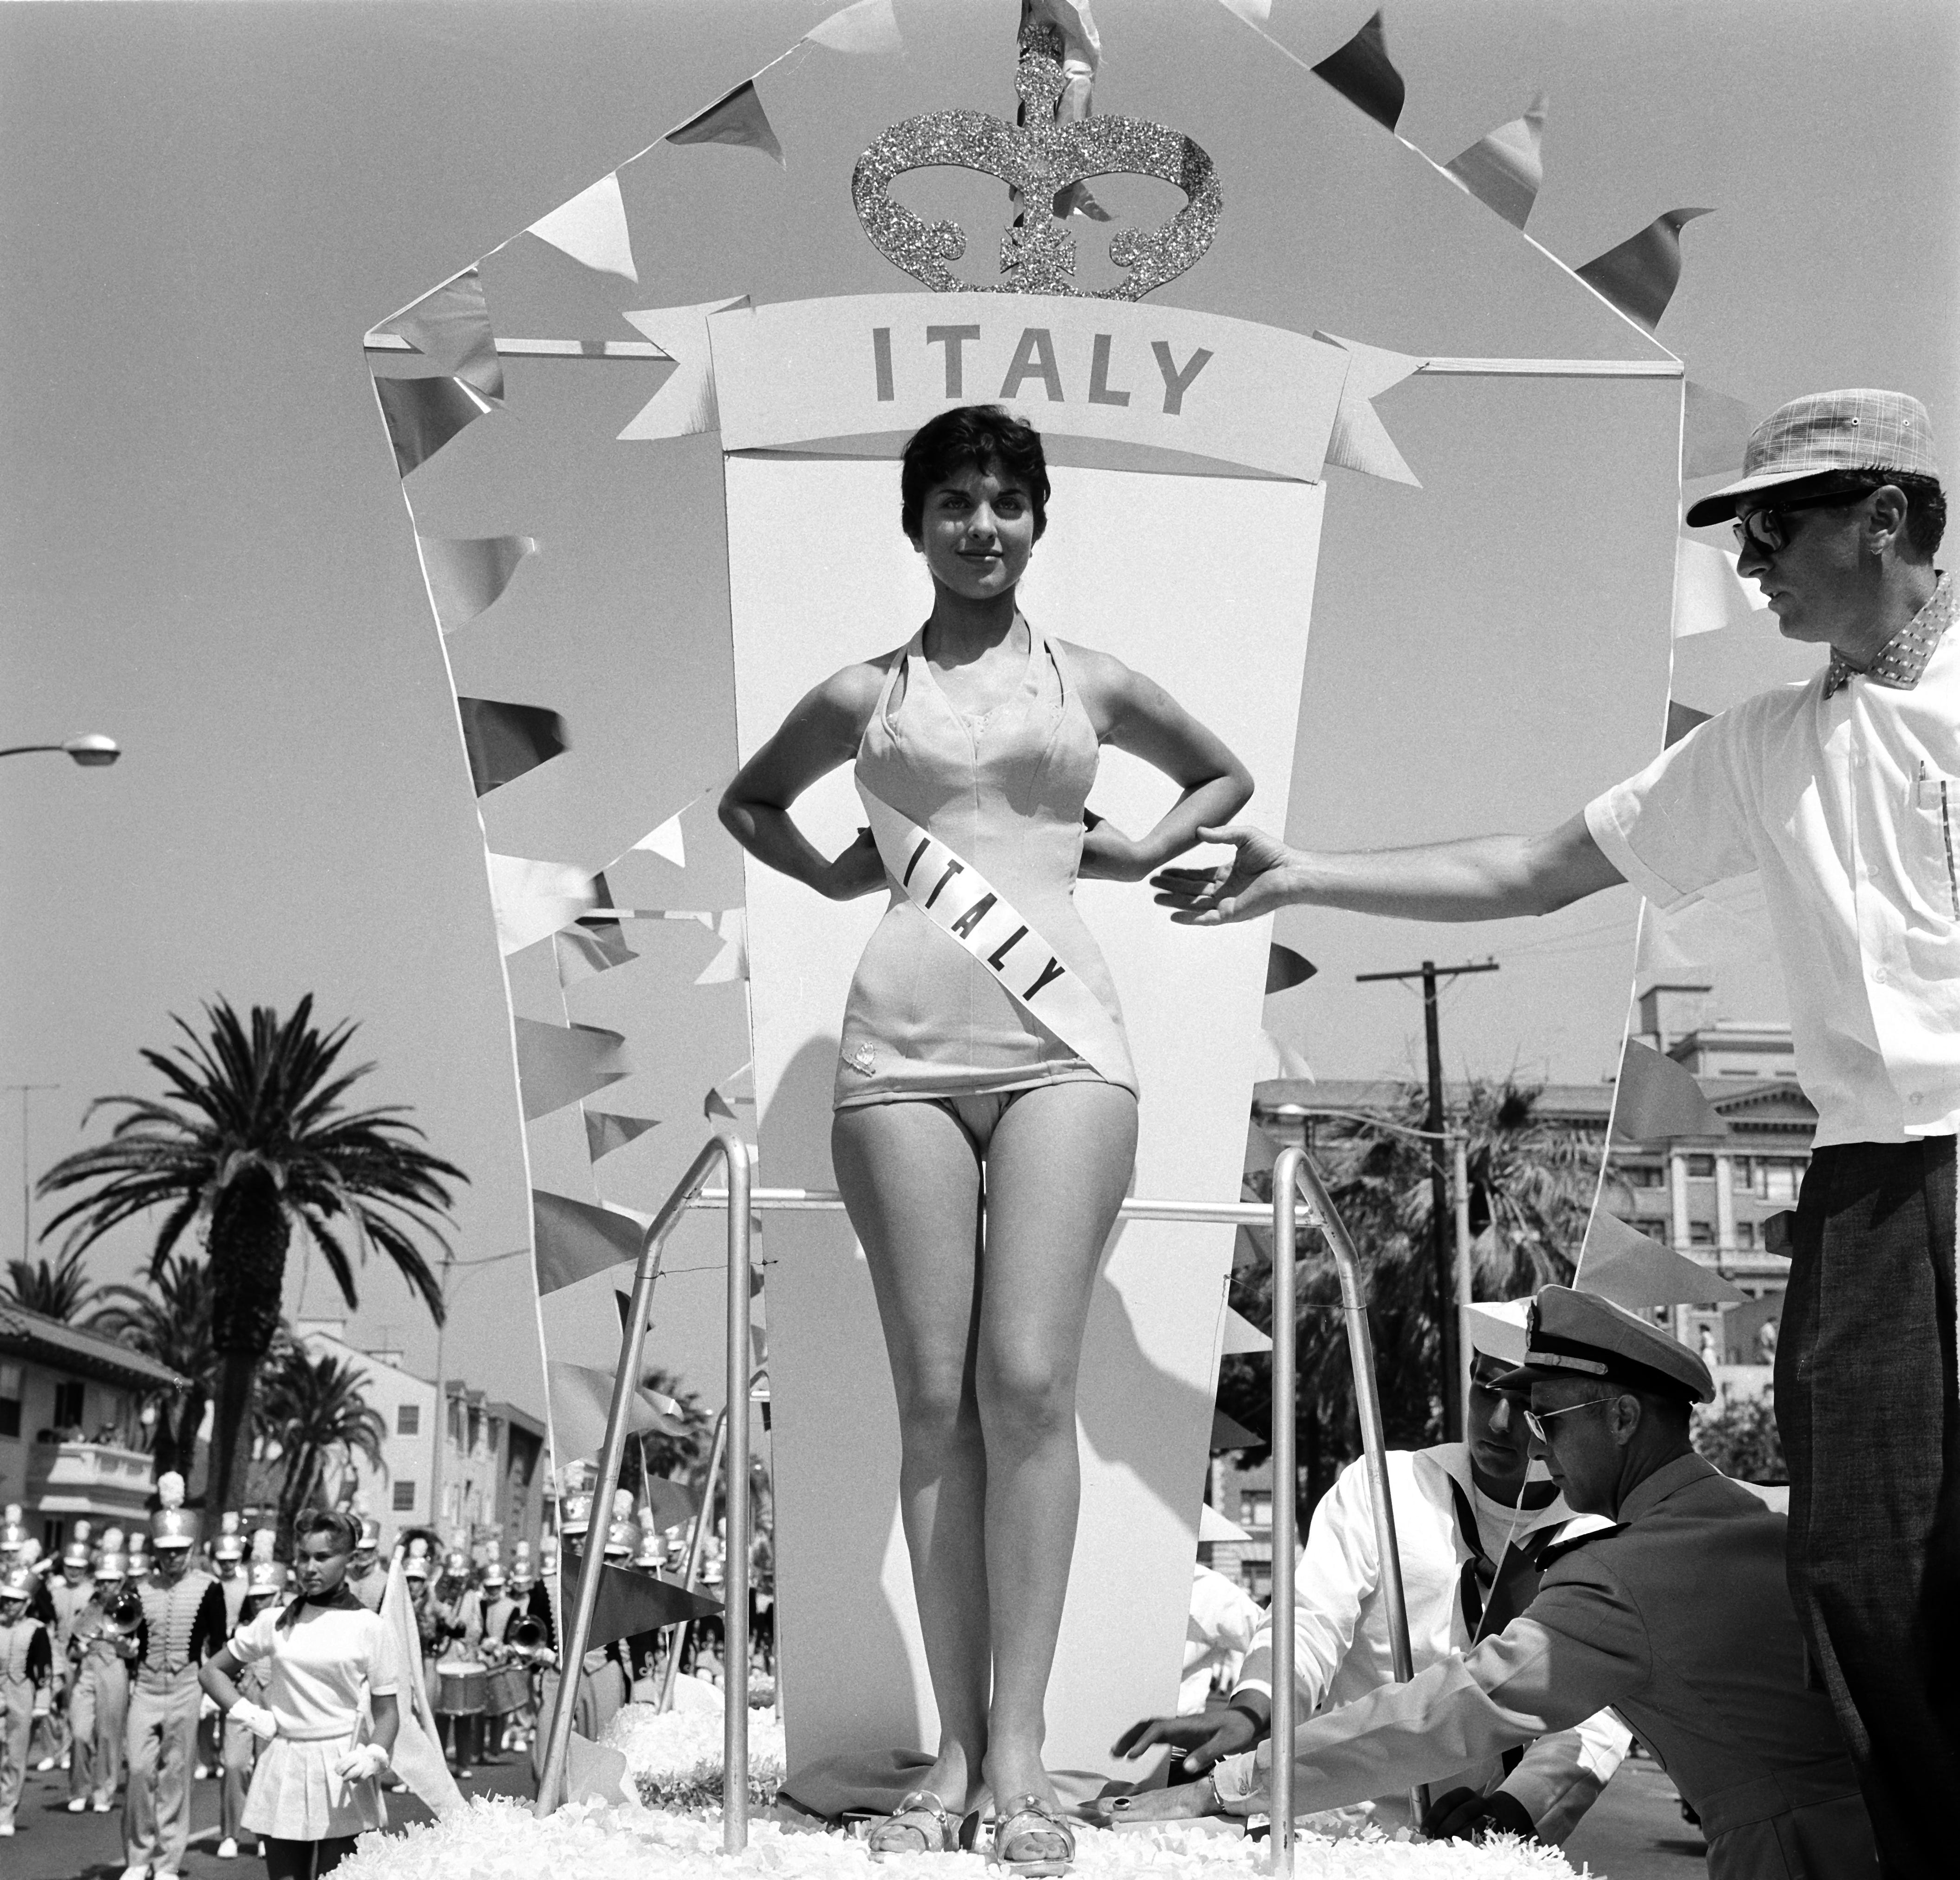 26. JULI 1958: Miss Italien, Clara Copella, Miss Universe-Kandidatin posiert während einer Parade in Long Beach, Kalifornien.  (